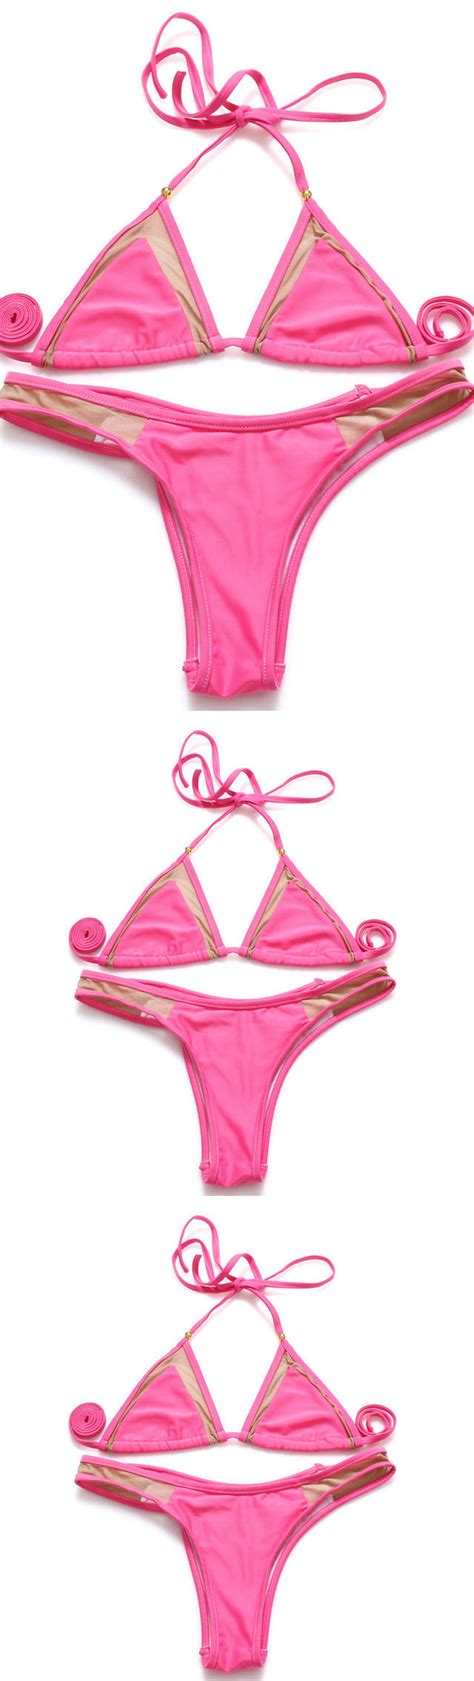 Pink Triangle Halter Bikini Pink Triangle Bikini For Women Swimming